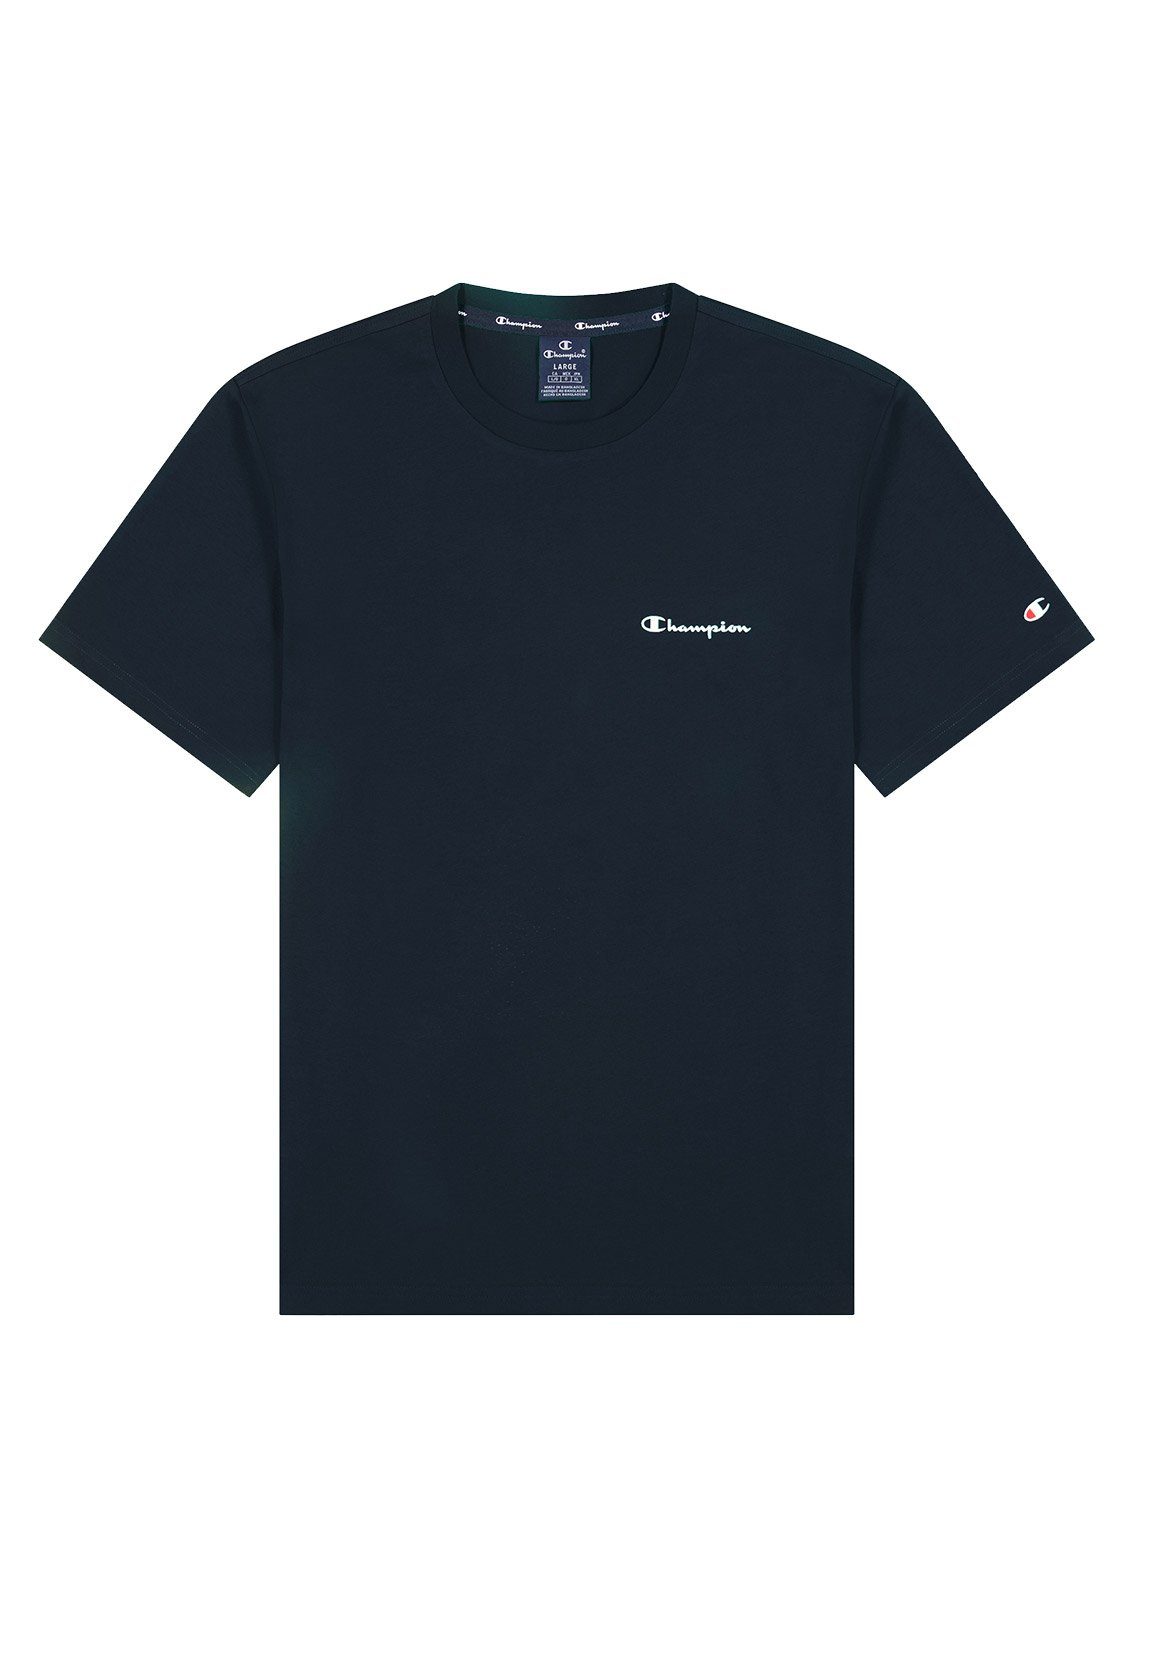 Champion T-Shirt Champion Herren T-Shirt schwarz Dunkelblau BS501 NNY 217159